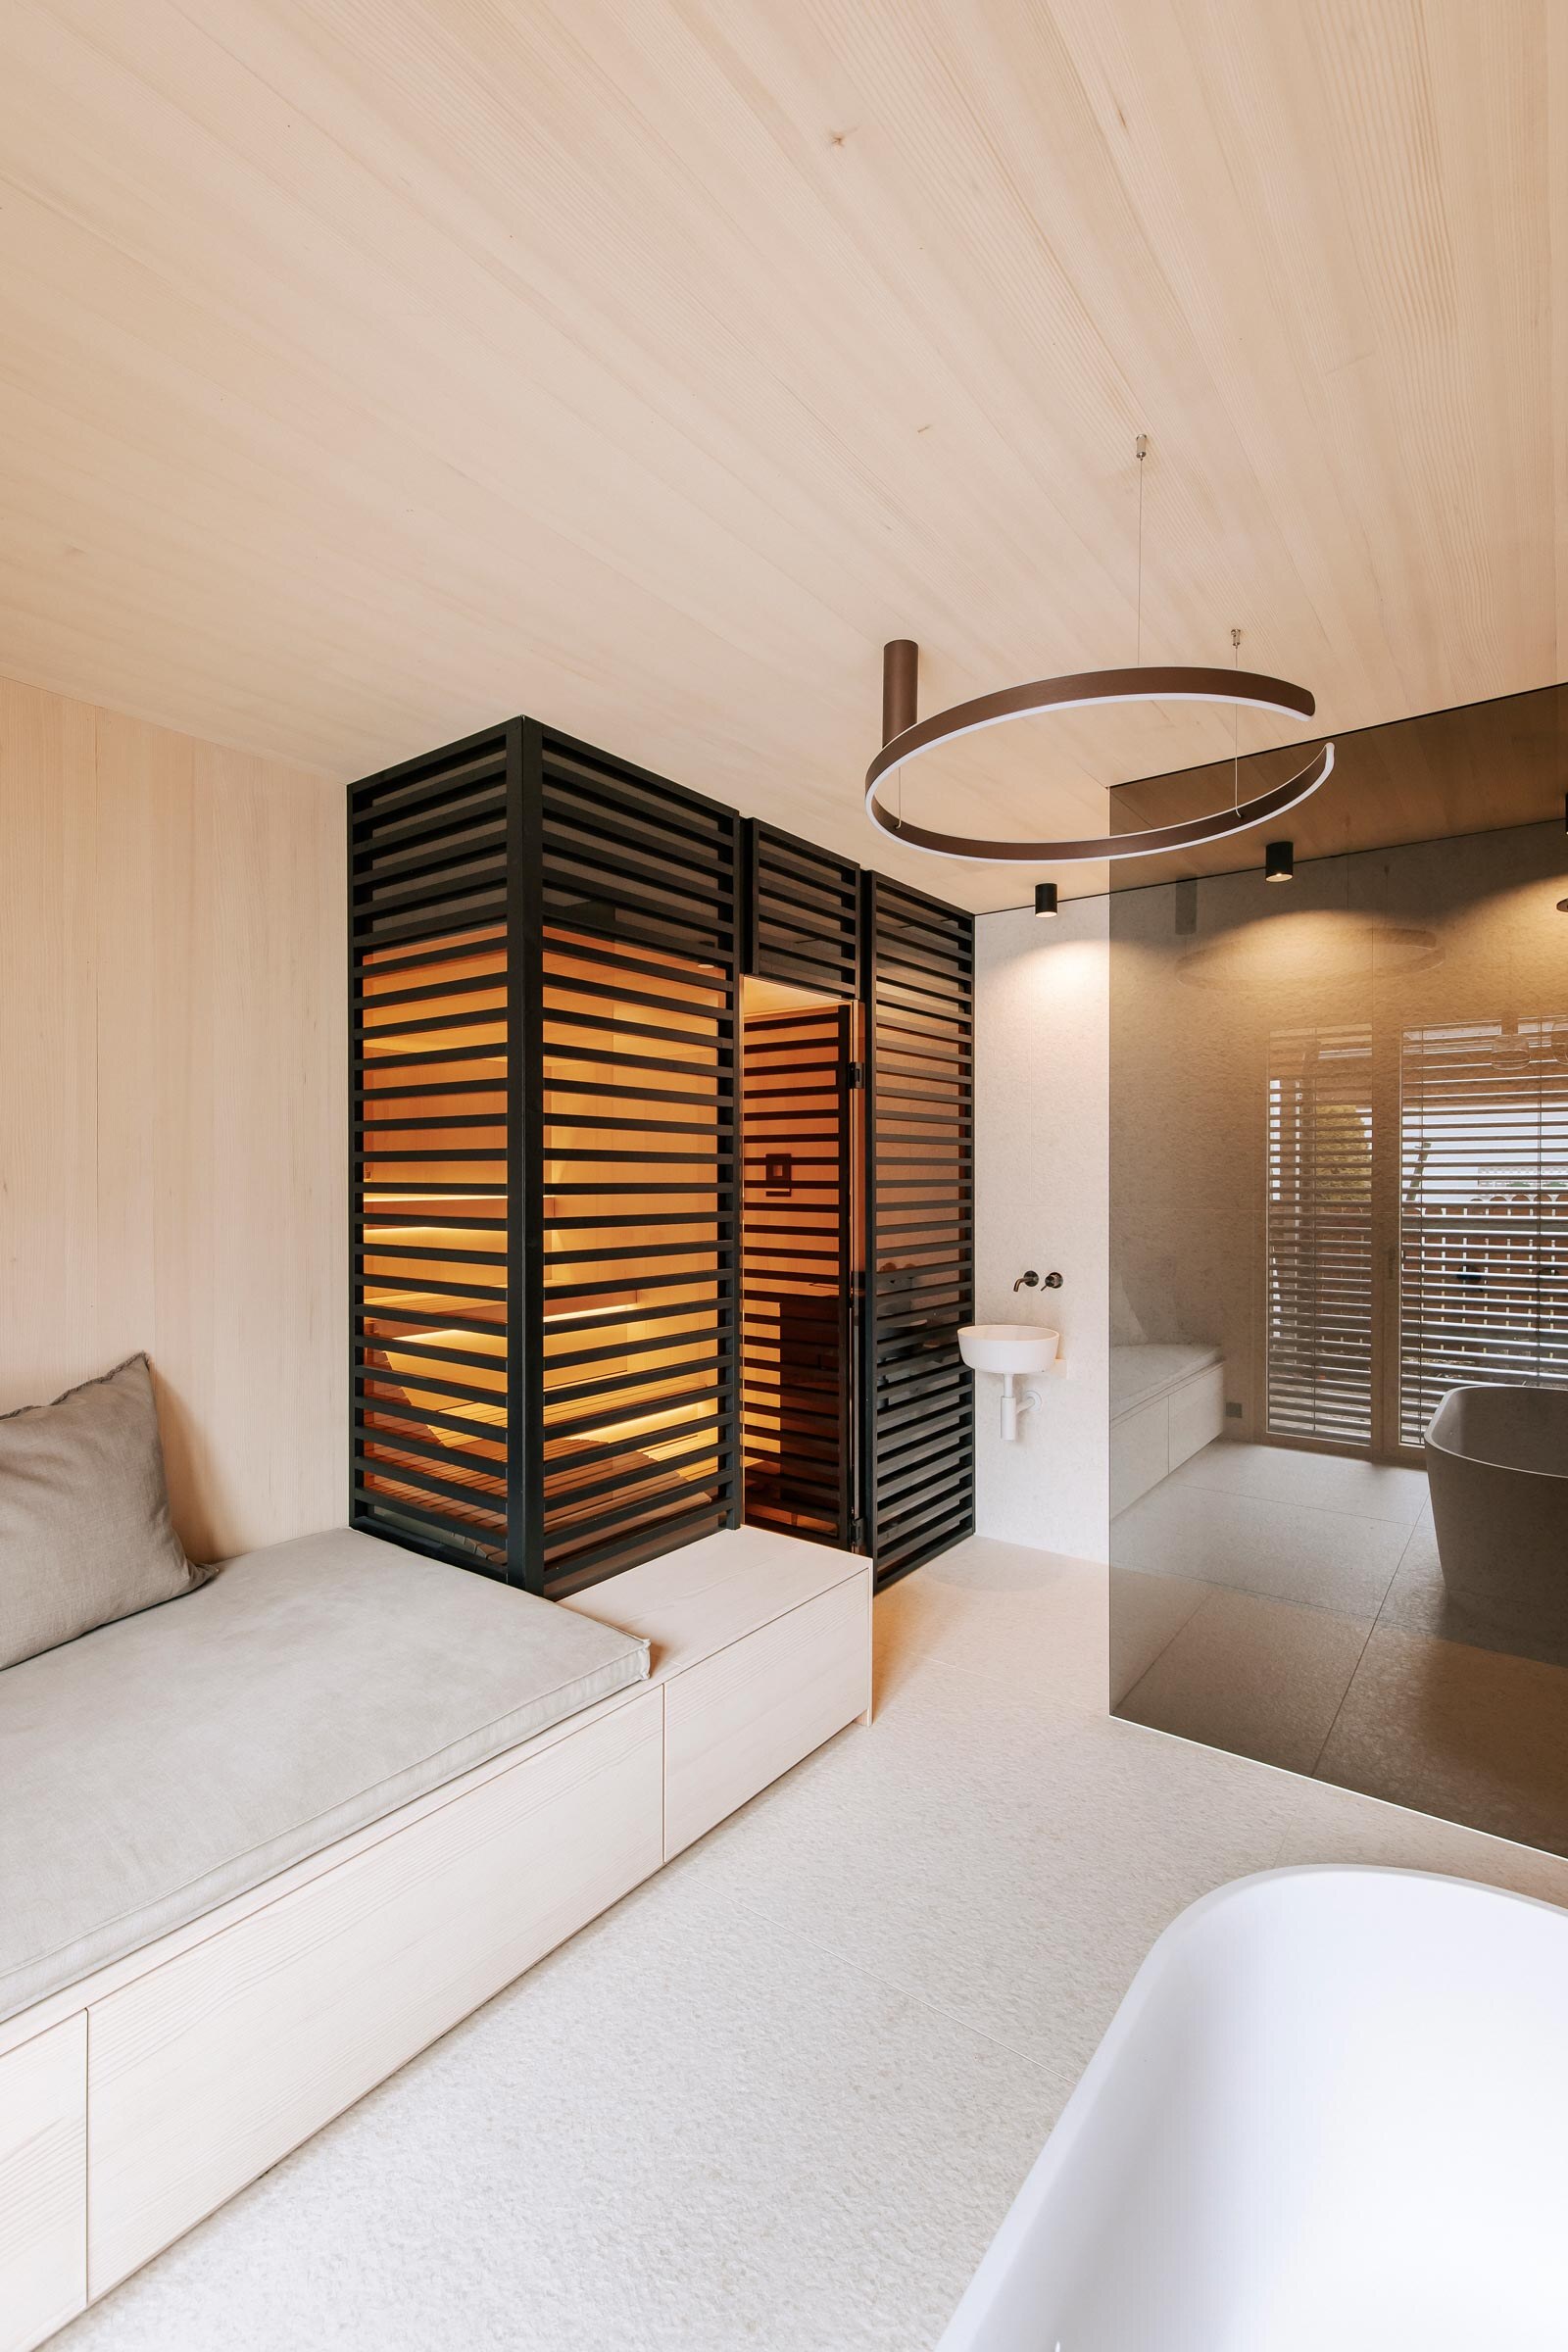 Modernes Private Spa im Badezimmer mit maßgeschneiderter Sauna mit getoenter Panorama-Glasfront, sowie raumhoher Verkleidung aus schwarzen Holzstreben als Sichtschutz, anschliessendem Daybed und bodengleicher Dusche.